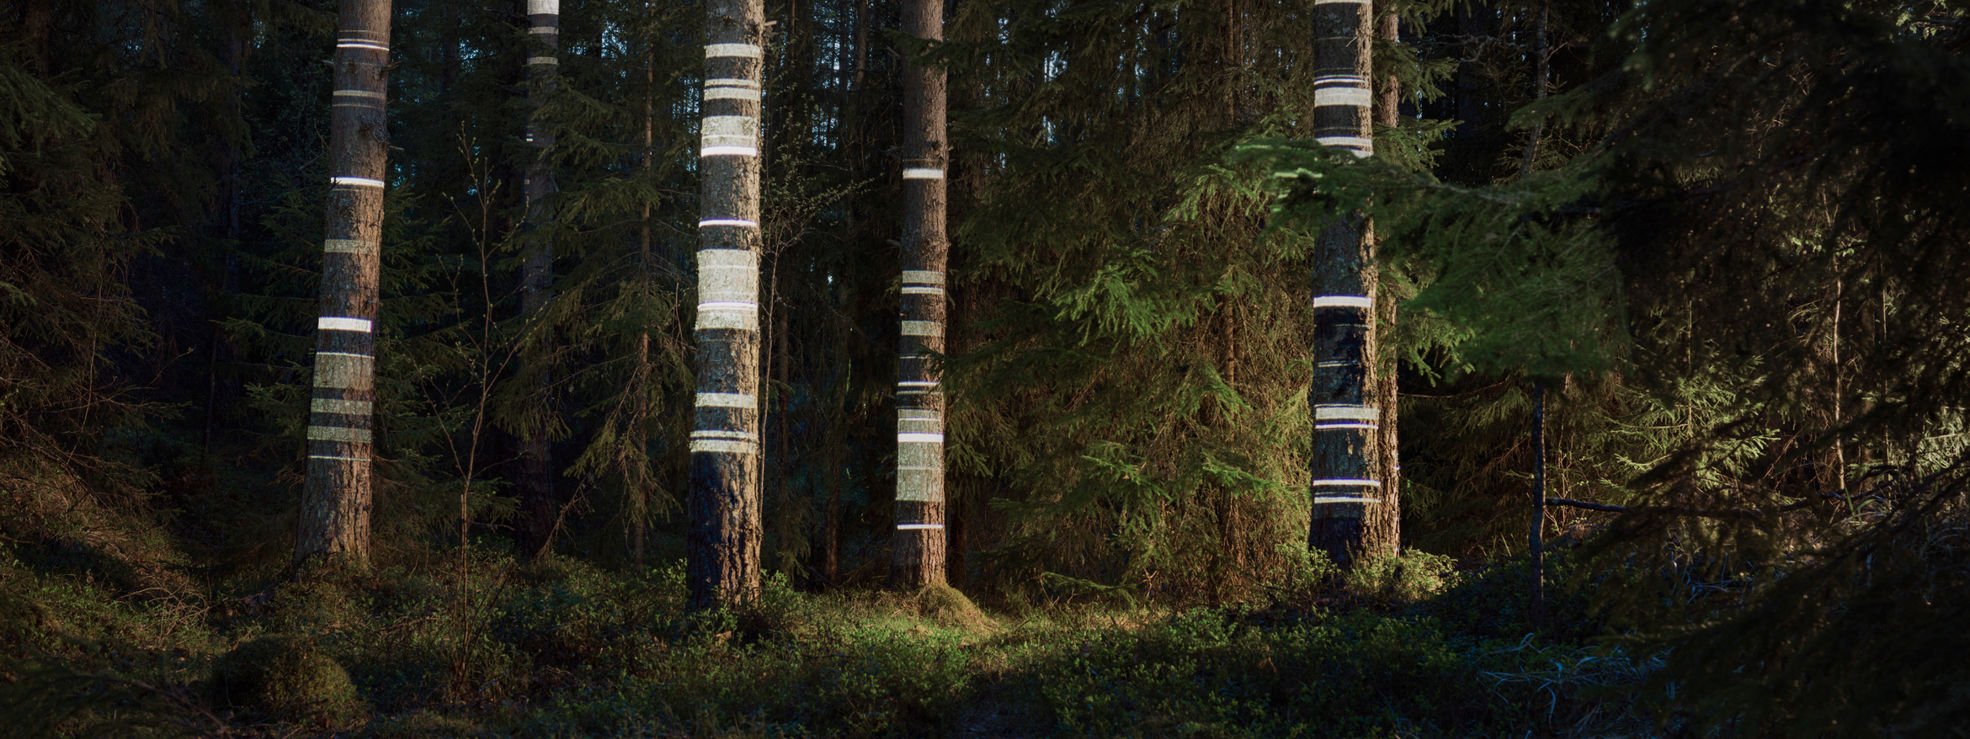 Trädstammar med synliga ljuslinjer.